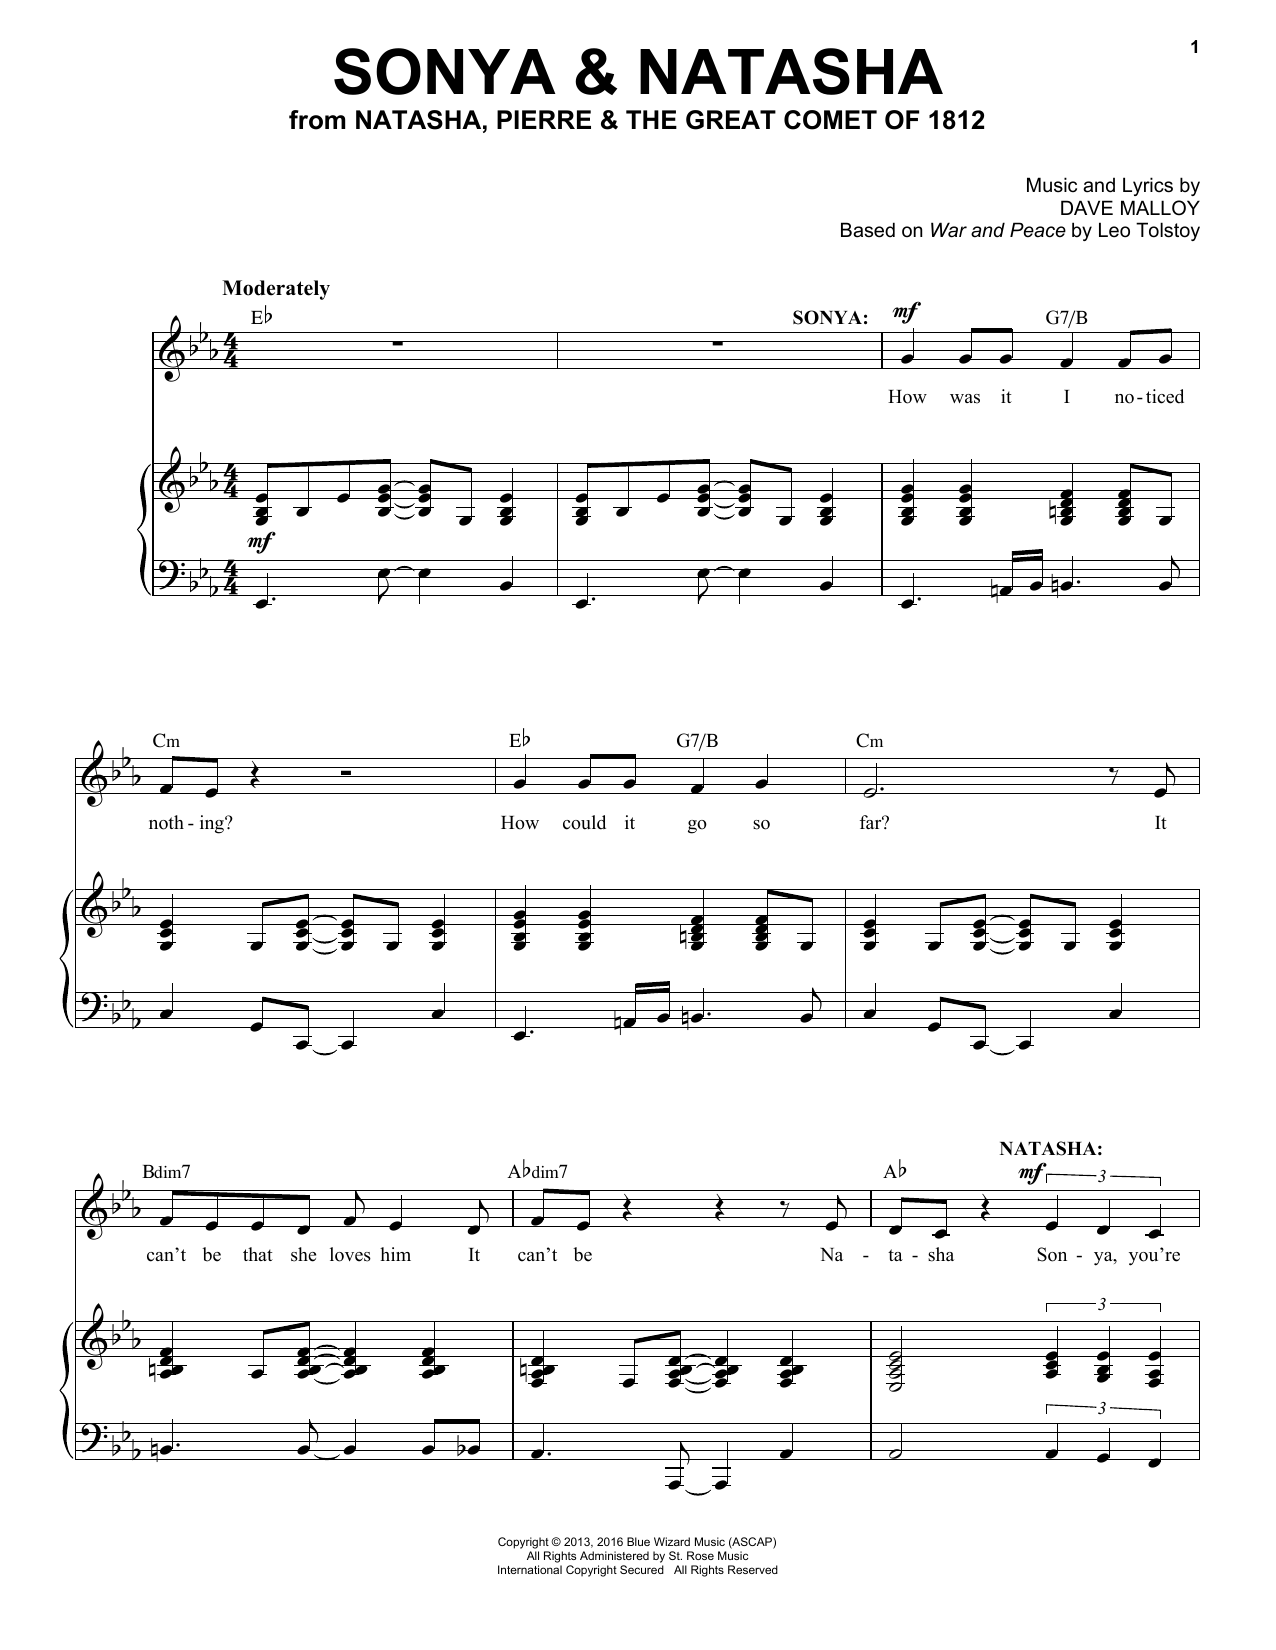 Josh Groban Sonya & Natasha Sheet Music Notes & Chords for Piano & Vocal - Download or Print PDF